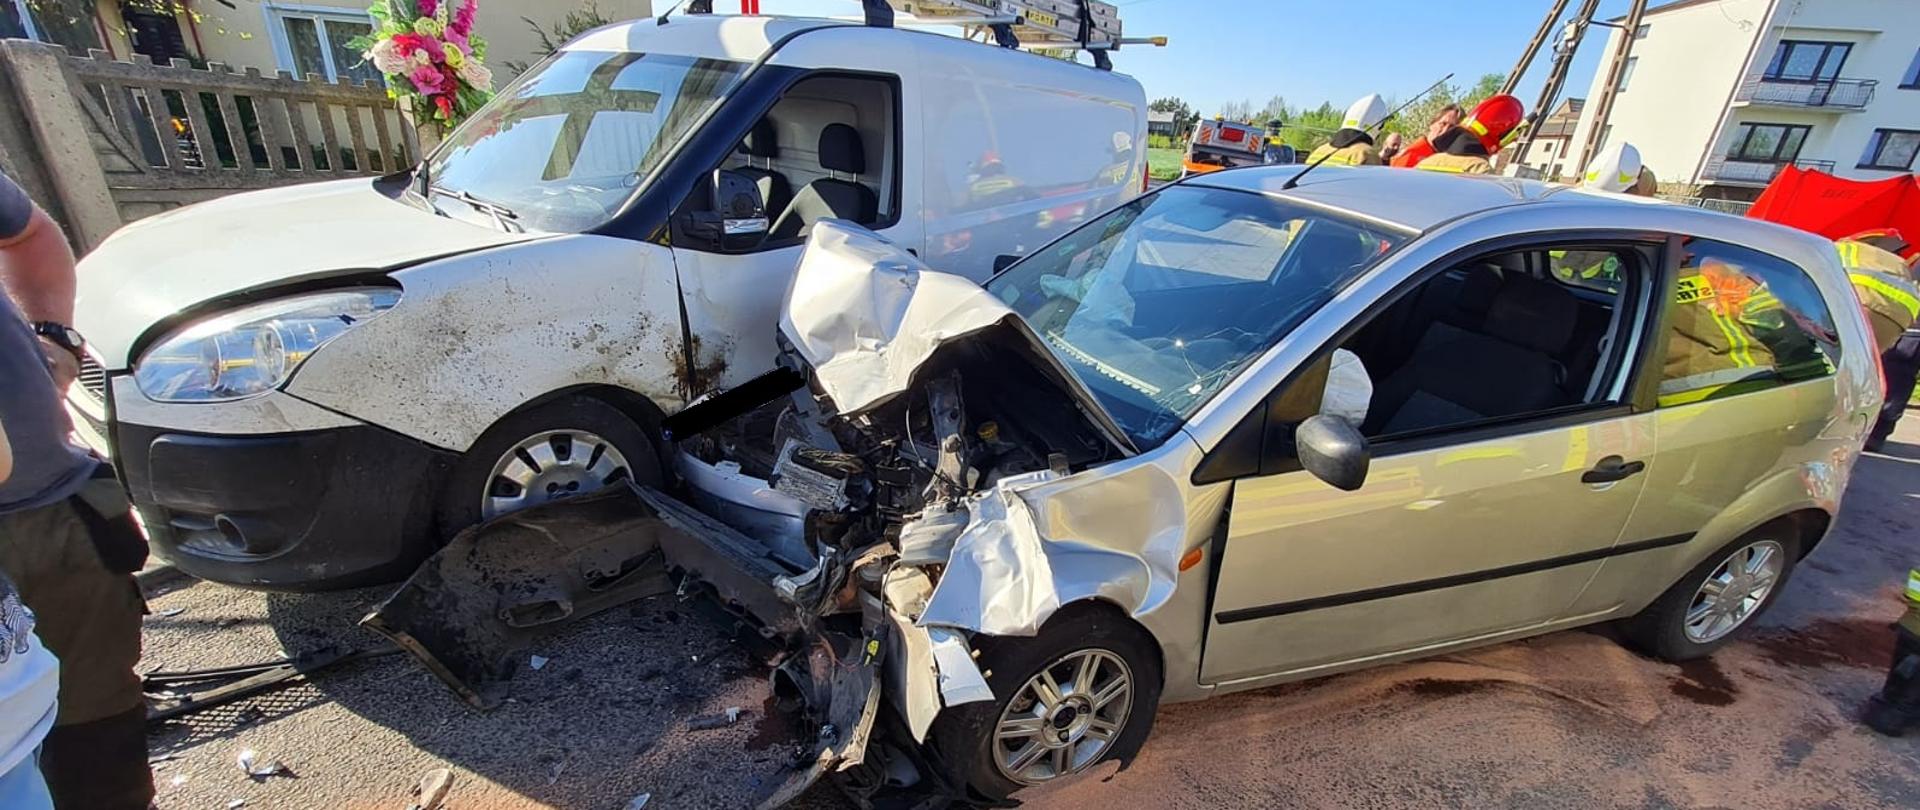 Zdjęcie przedstawia dwa rozbite samochody osobowe